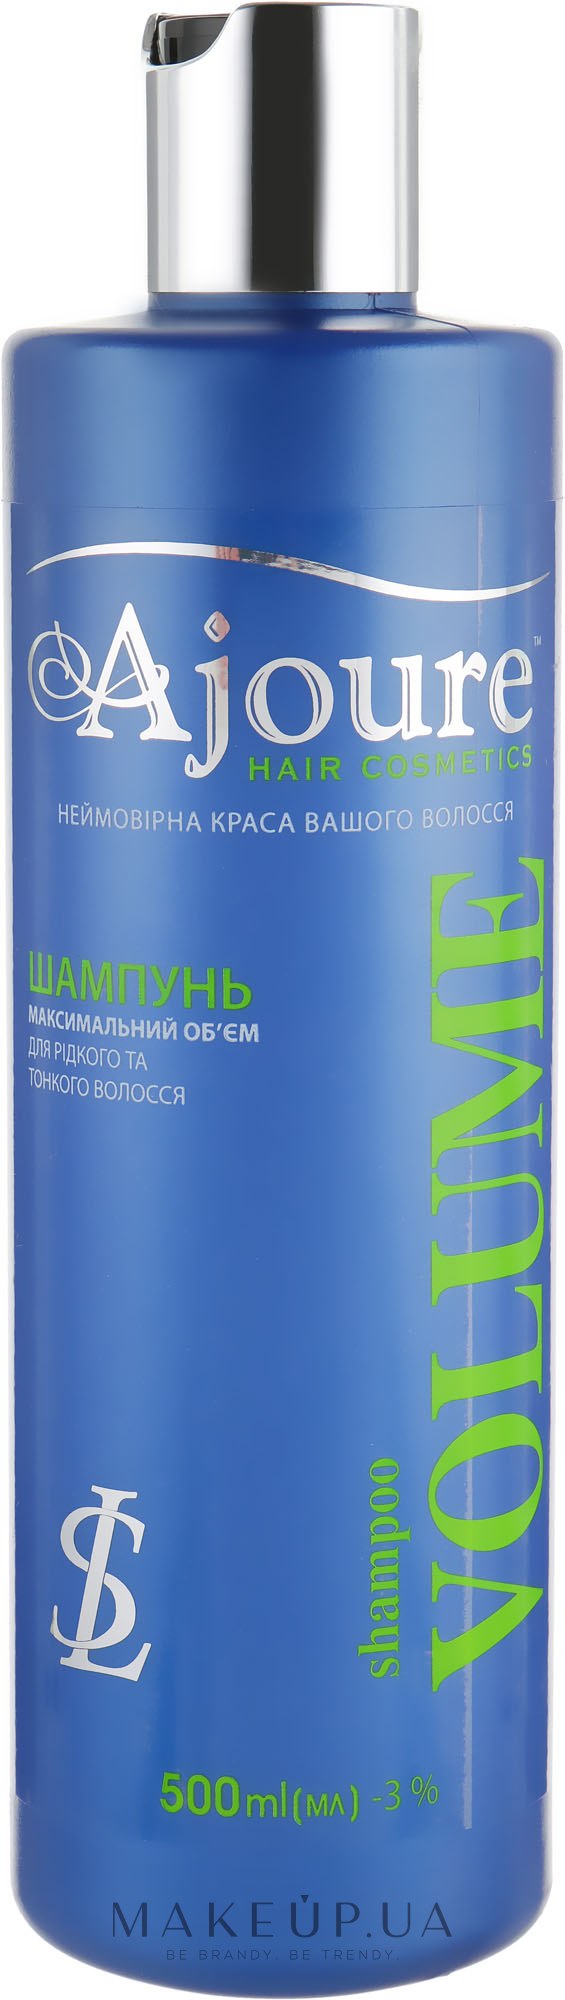 Шампунь максимальный объем для жидких и тонких волос - Ajoure Volume Shampoo — фото 500ml